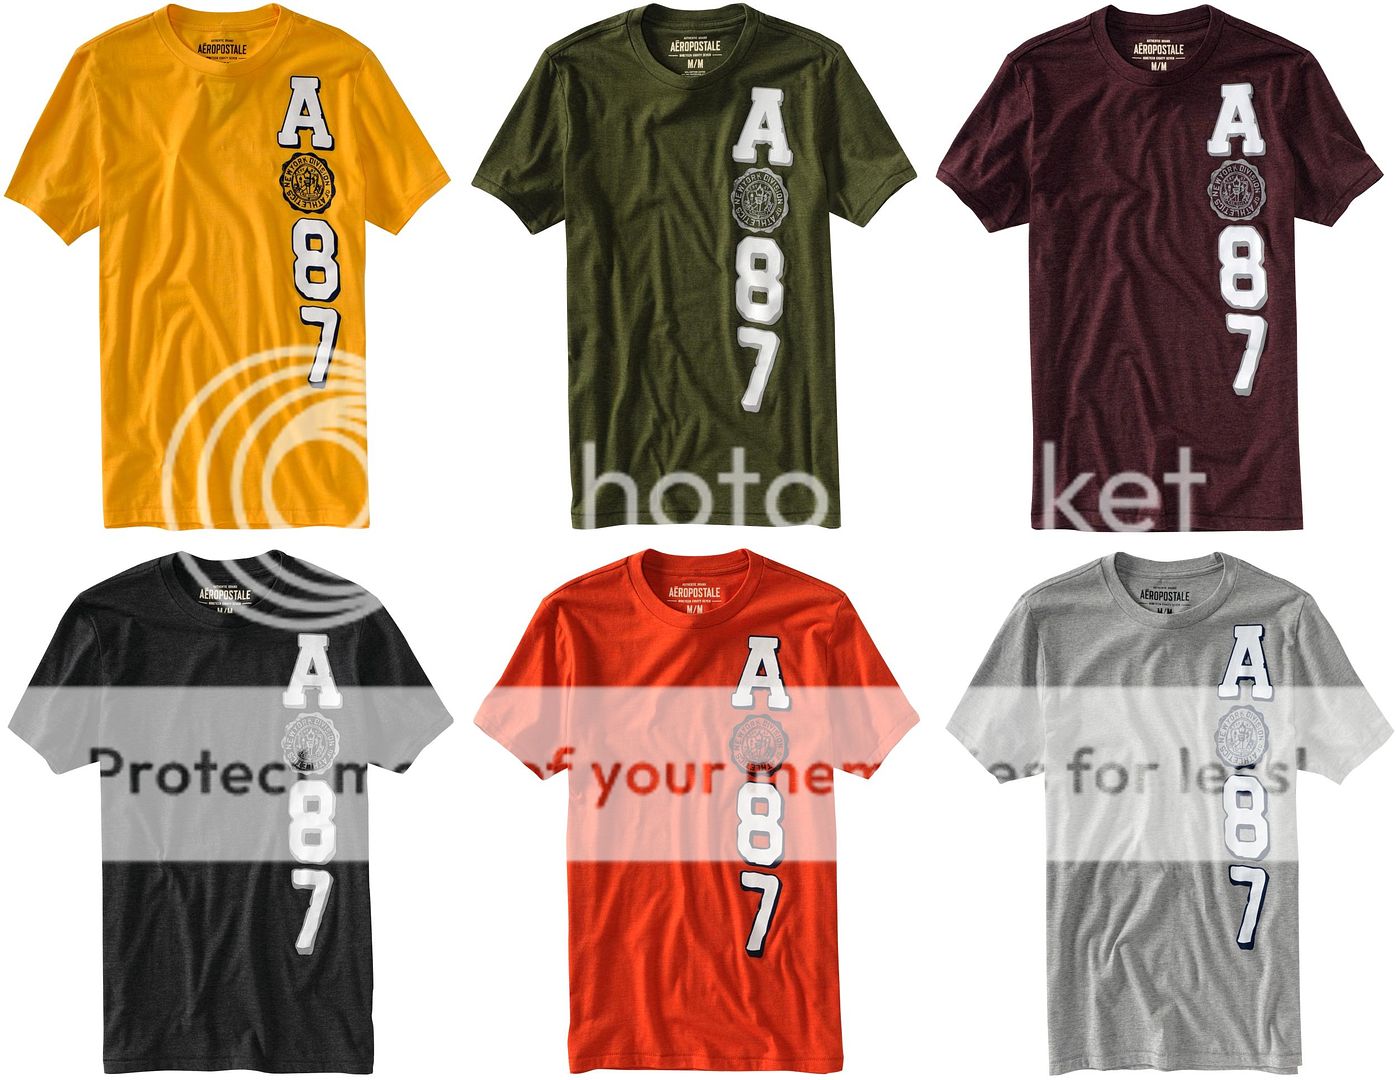 Aeropostale AERO mens T shirts Tee XS,S,M,L,XL,2XL,3XL  